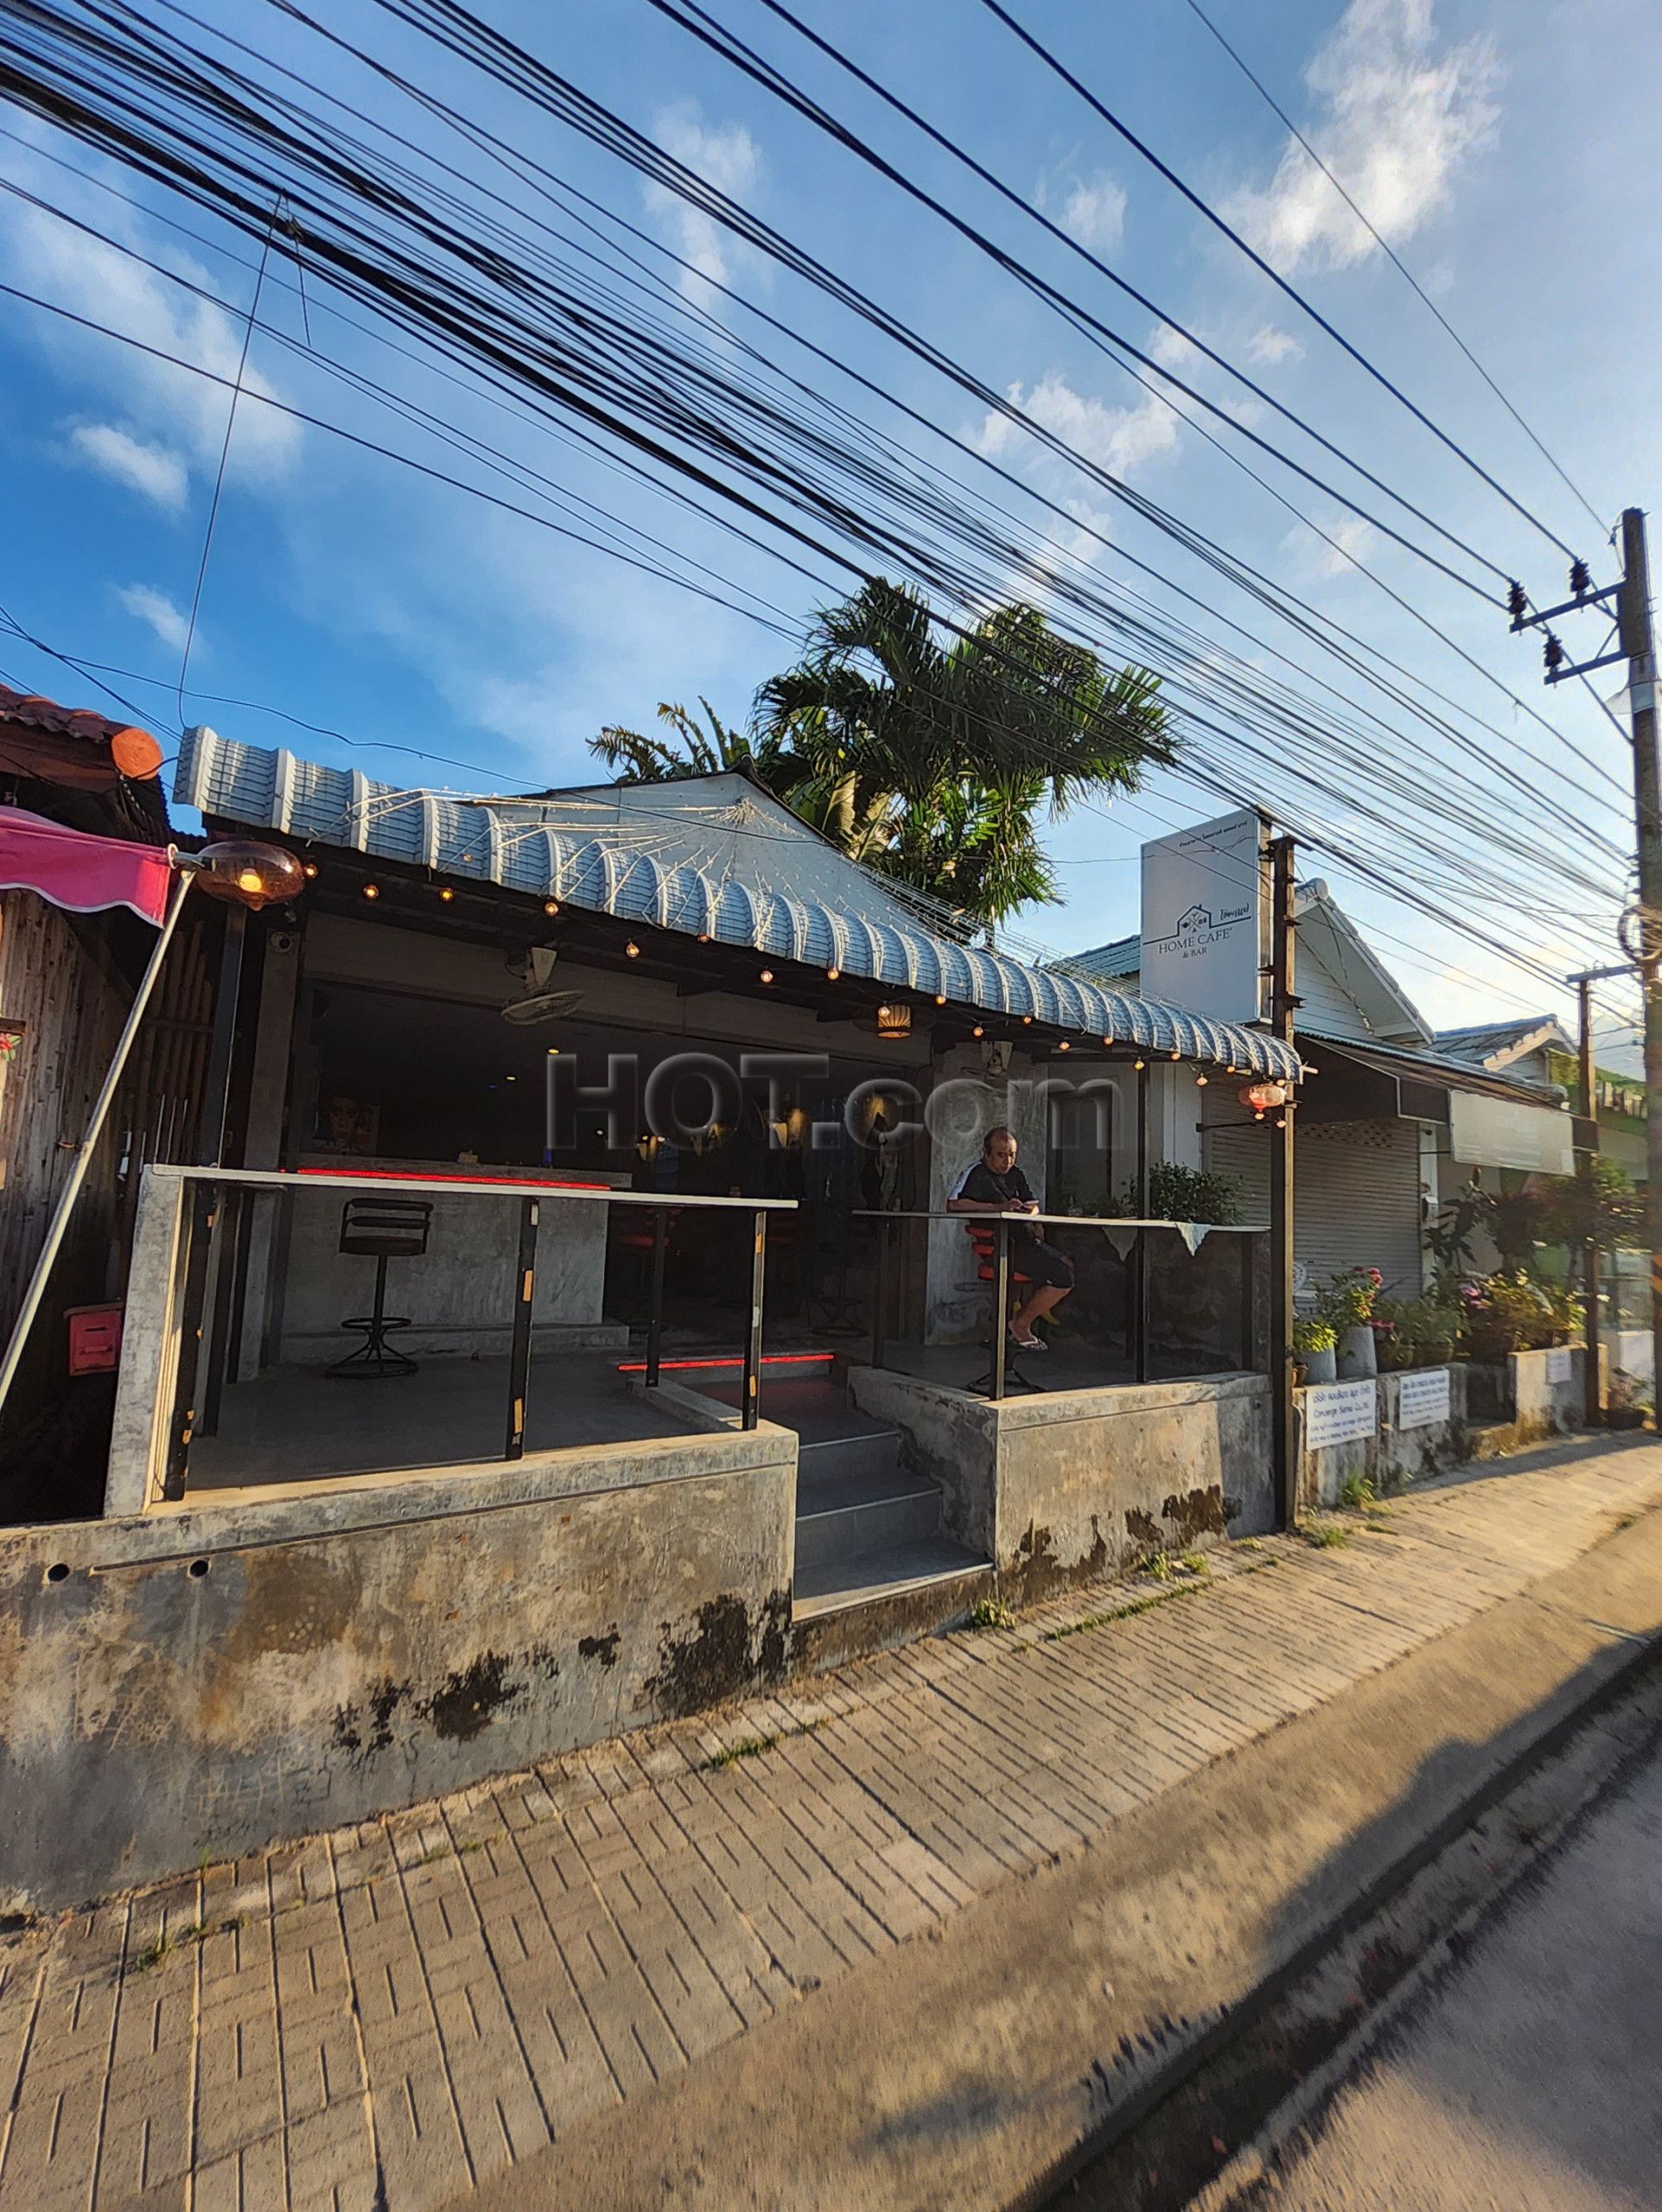 Ko Samui, Thailand Home Cafe & Bar